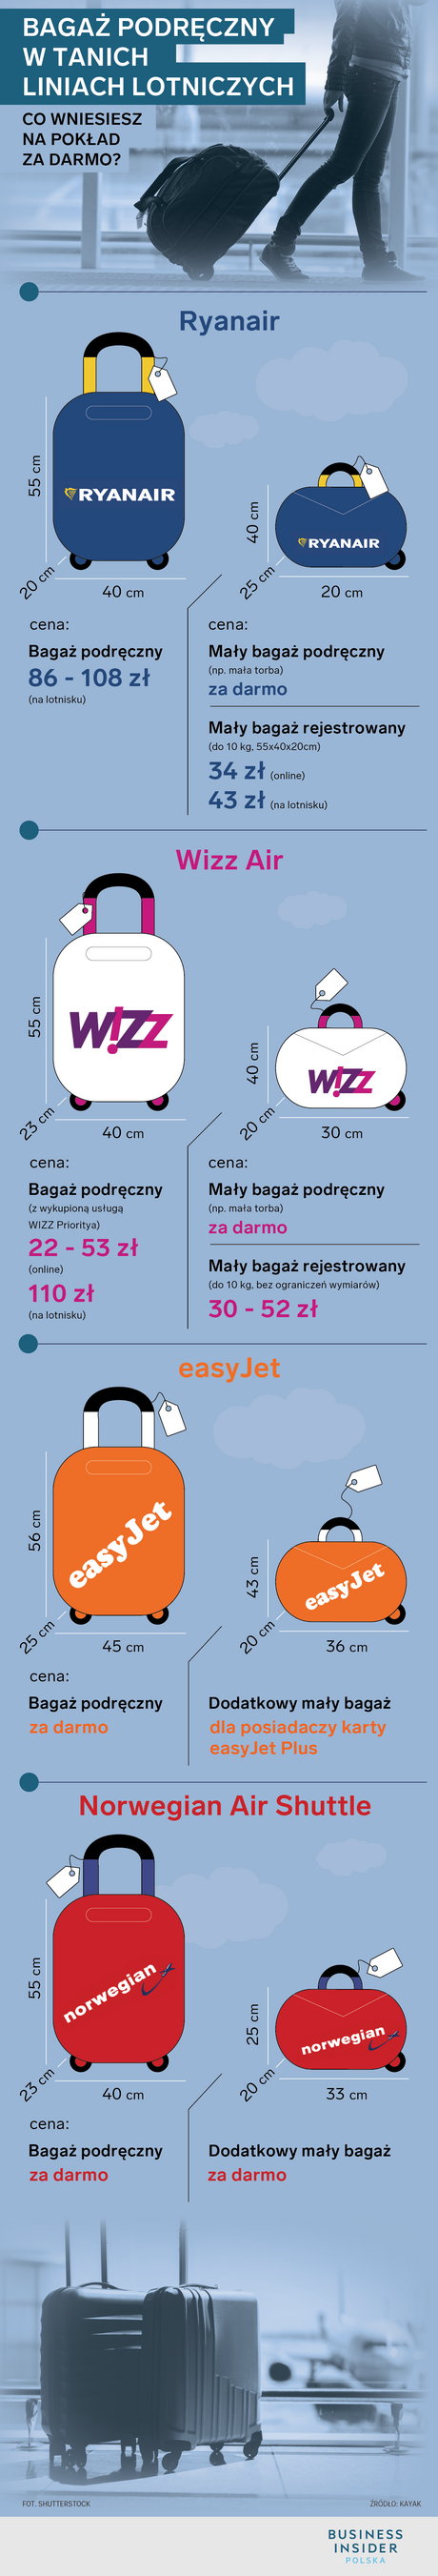 Bagaż podręczny bezpłatny w Ryanair, Wizz Air, EasyJet - wymiary, cena